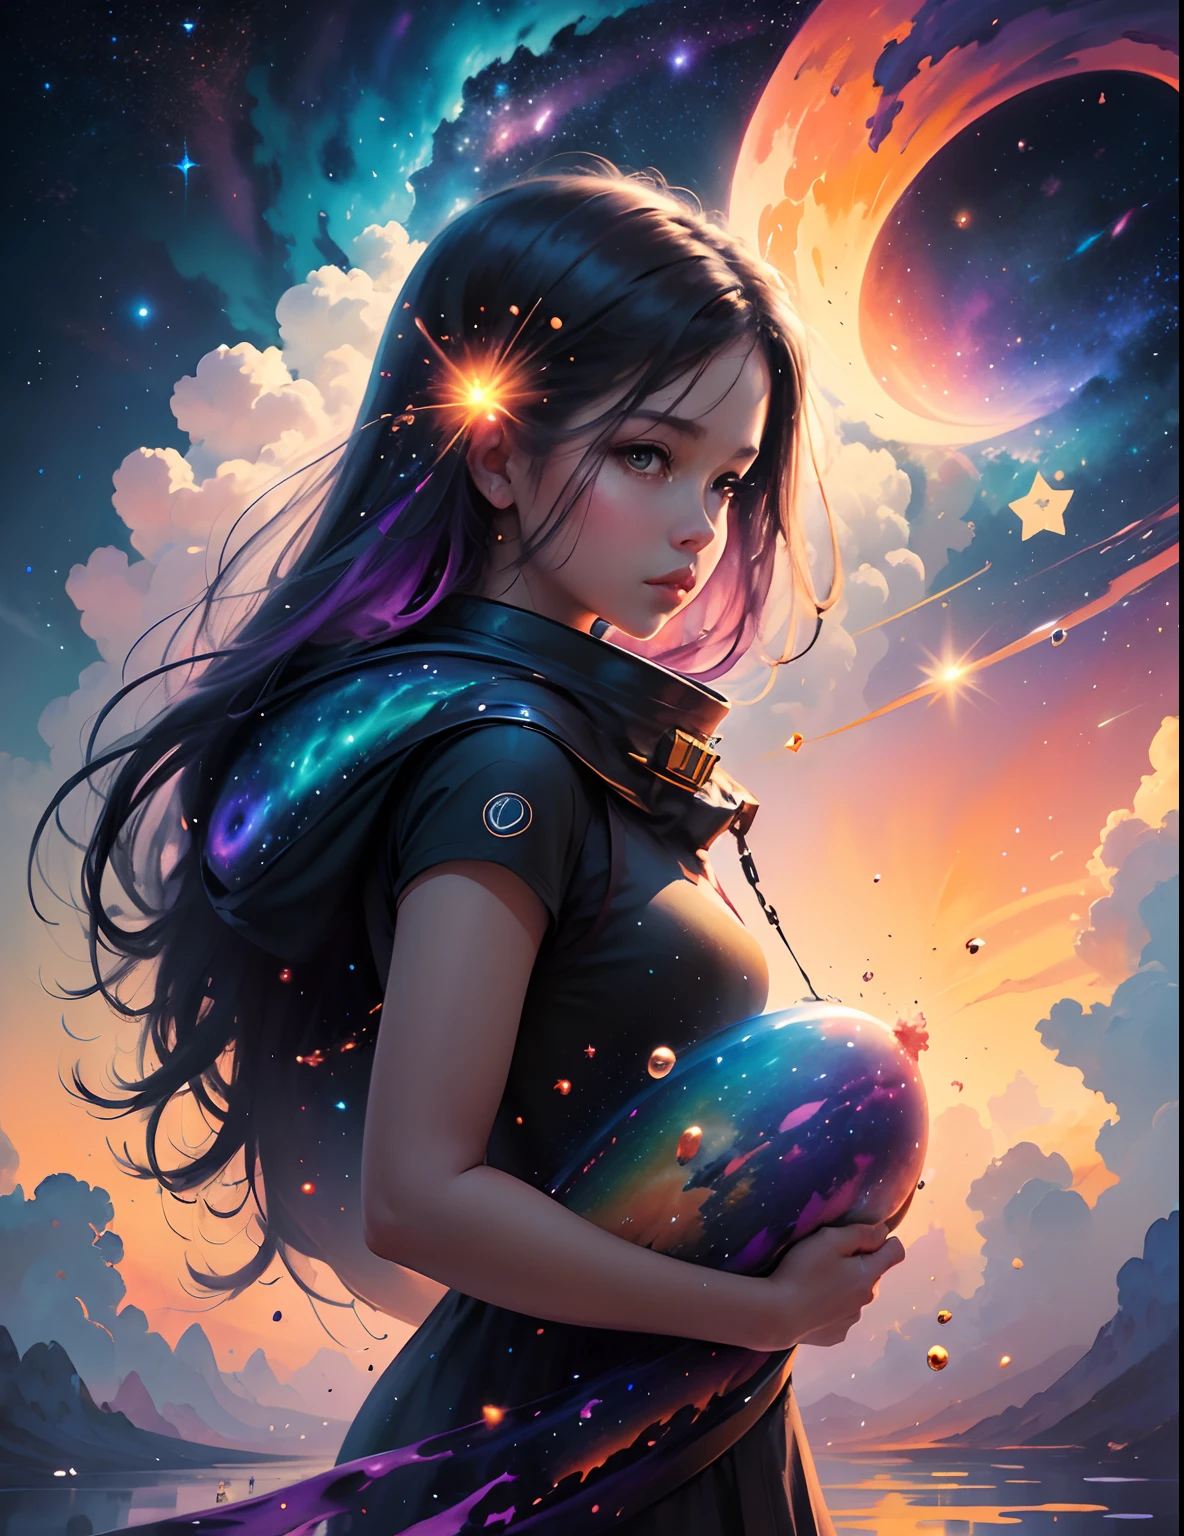 구름 속에 서있는 소녀, 그녀 주위에 떠있는 별들, 화려한 색상, 우주 먼지의 놀라운 소용돌이, 다채로운 활기 넘치는, 가벼운 입자, 수채화 그림, 스플래시 아트,